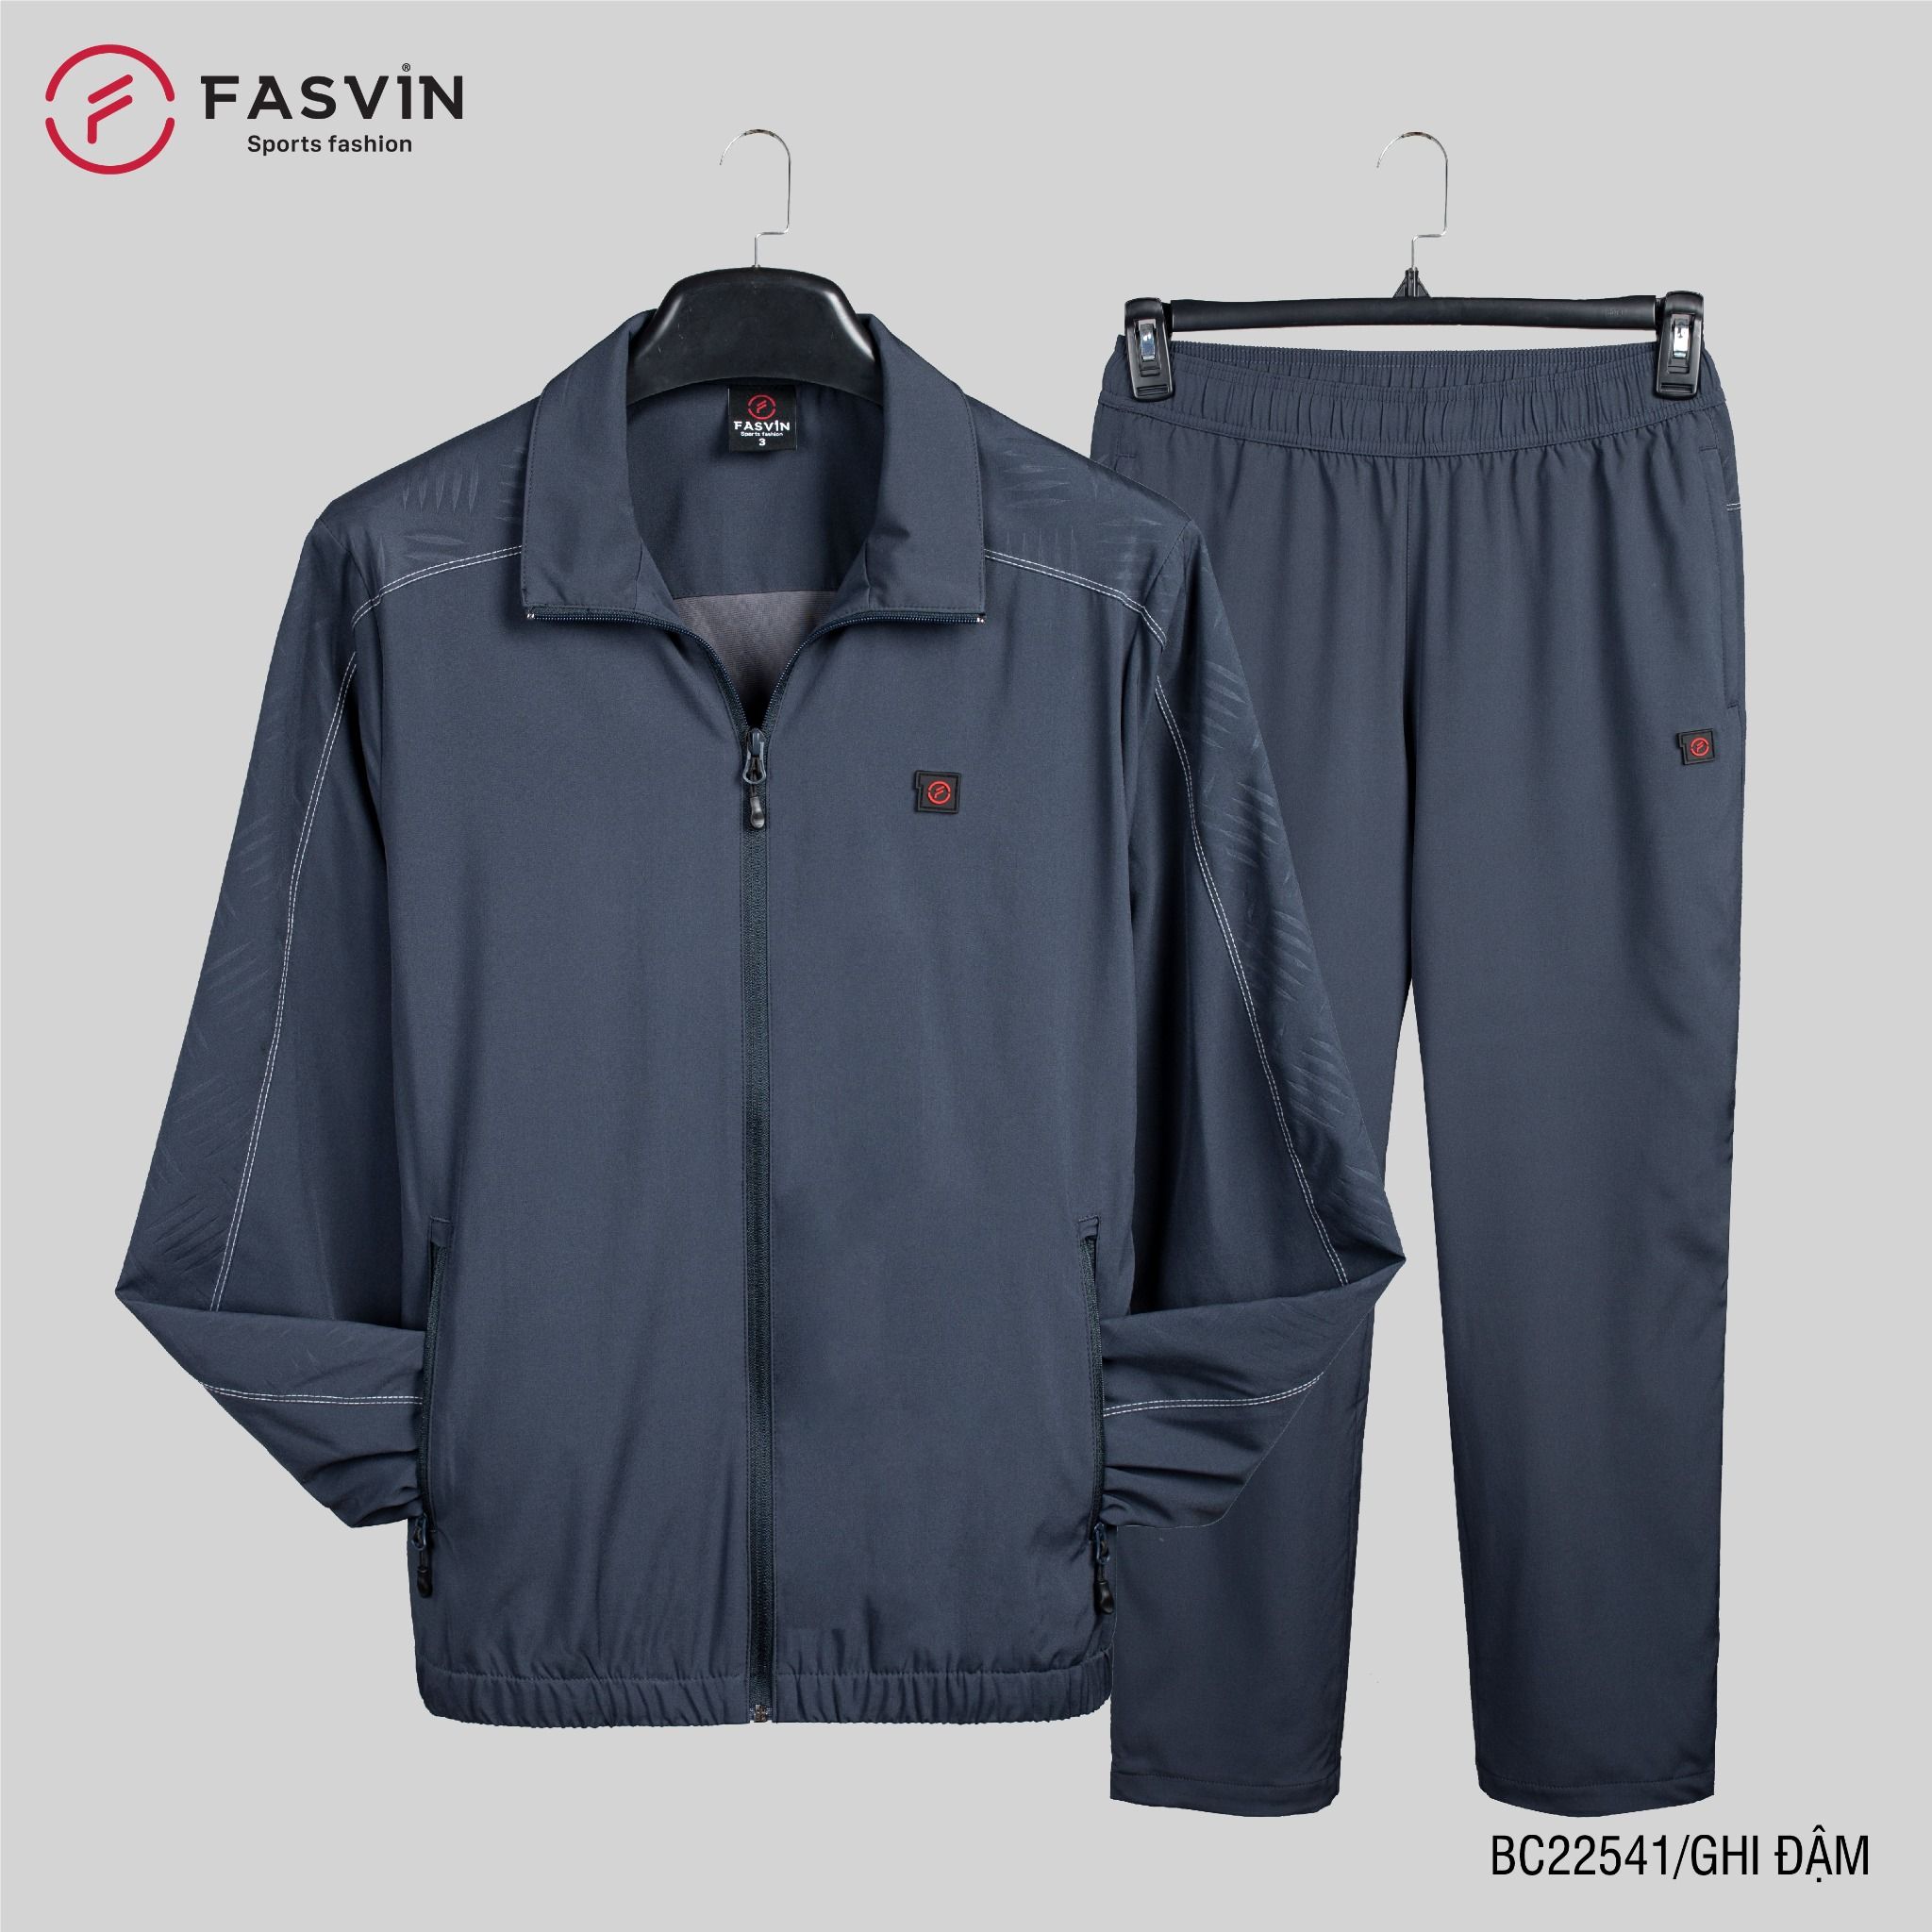  Bộ gió nam 2 lớp FASVIN vải thể thao cao cấp lót vải thun hàng chính hãng BC22541 